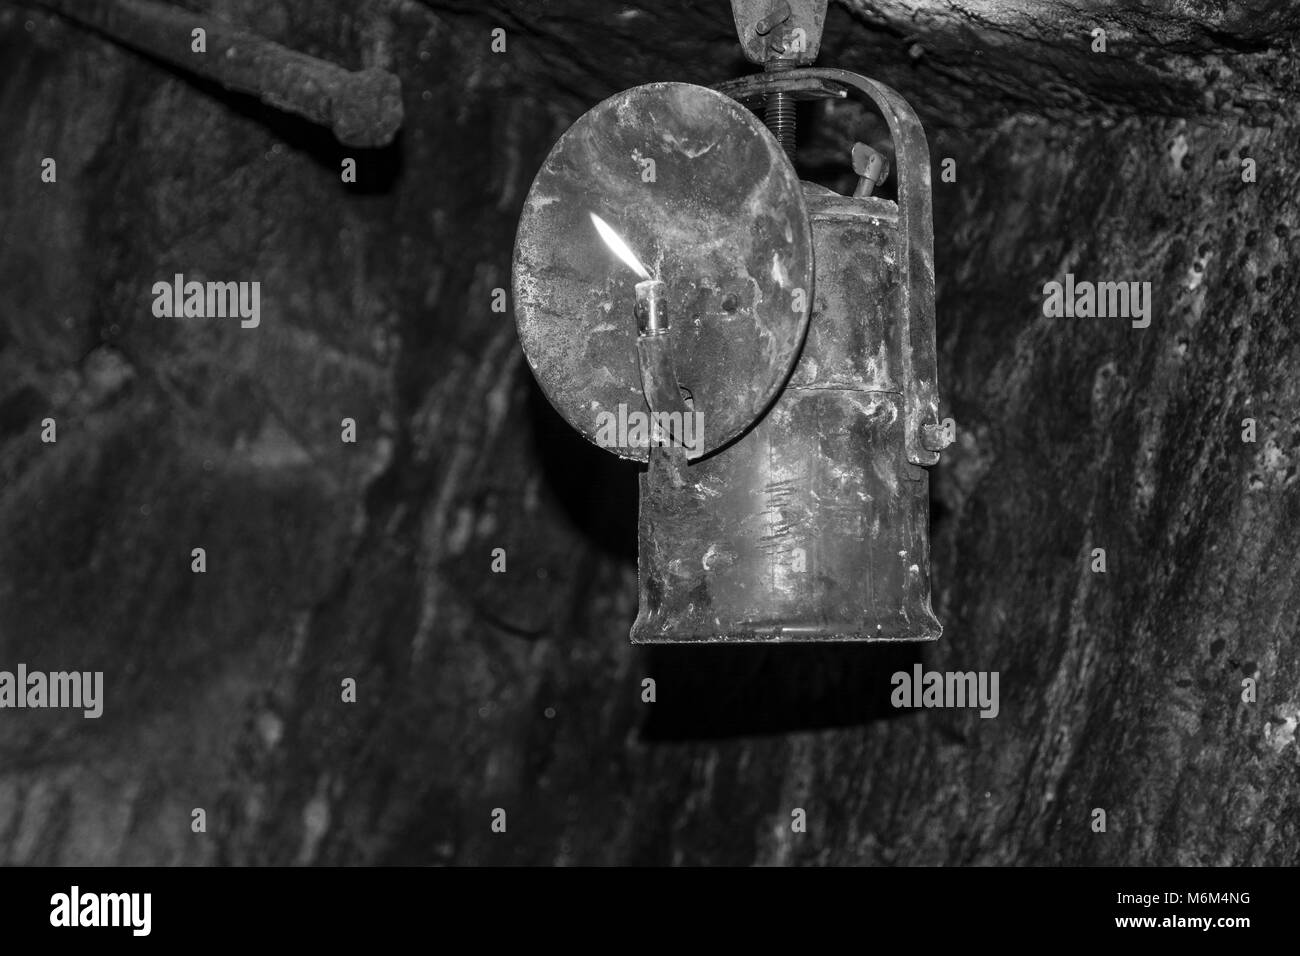 Karbidlampen, oder Acetylen Gaslampen. Es ist eine Art von Lampe, die in der Vergangenheit von Bergleuten verwendet. Es wurde im Jahr 1900 erfunden. Bild in Schwarz und Weiß Stockfoto